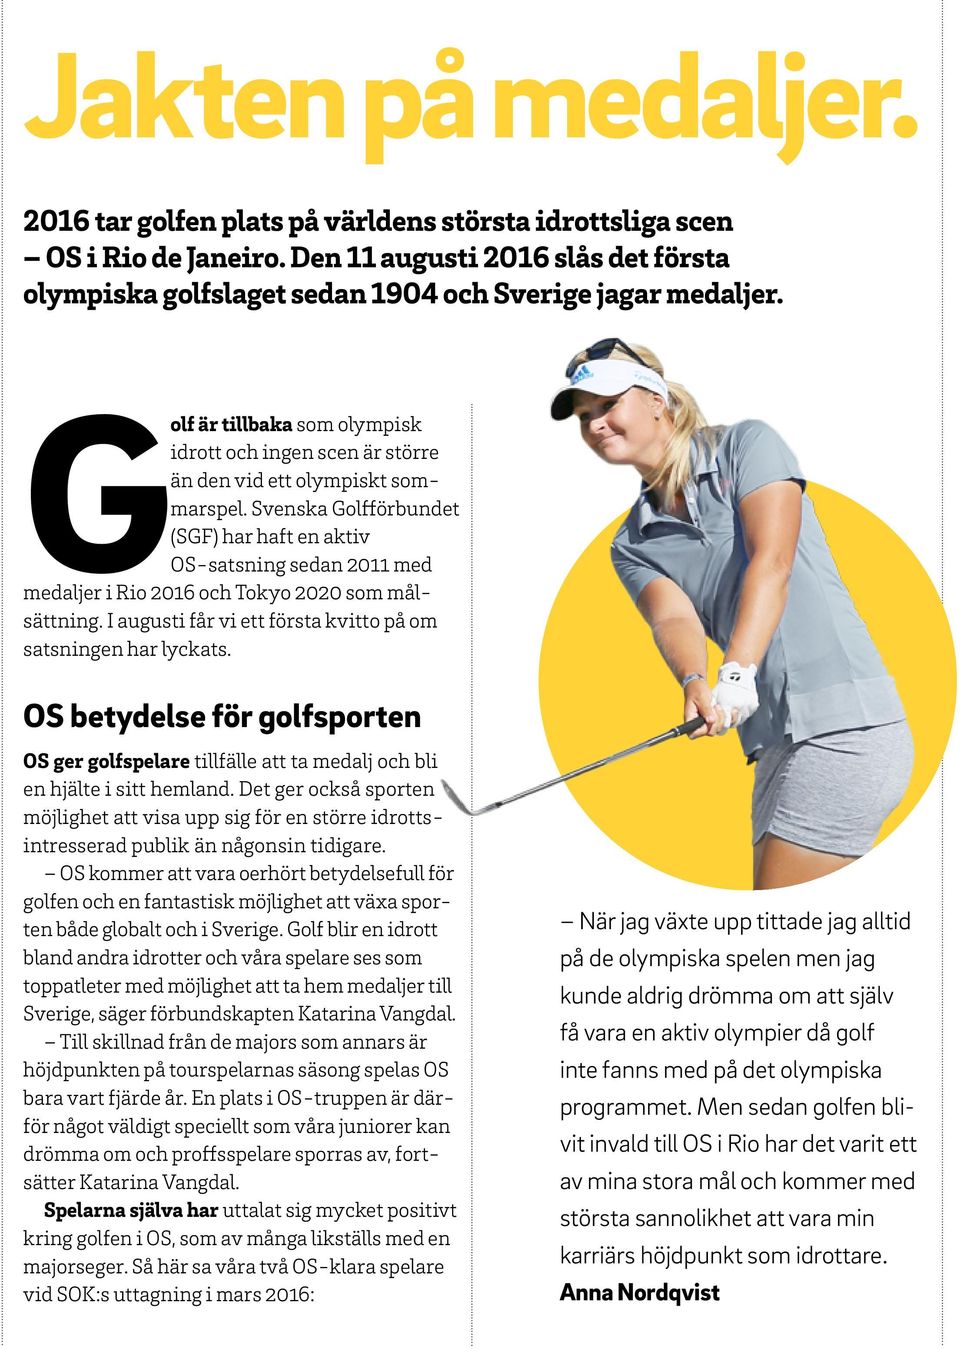 Svenska Golfförbundet (SGF) har haft en aktiv OS-satsning sedan 2011 med medaljer i Rio 2016 och Tokyo 2020 som målsättning. I augusti får vi ett första kvitto på om satsningen har lyckats.